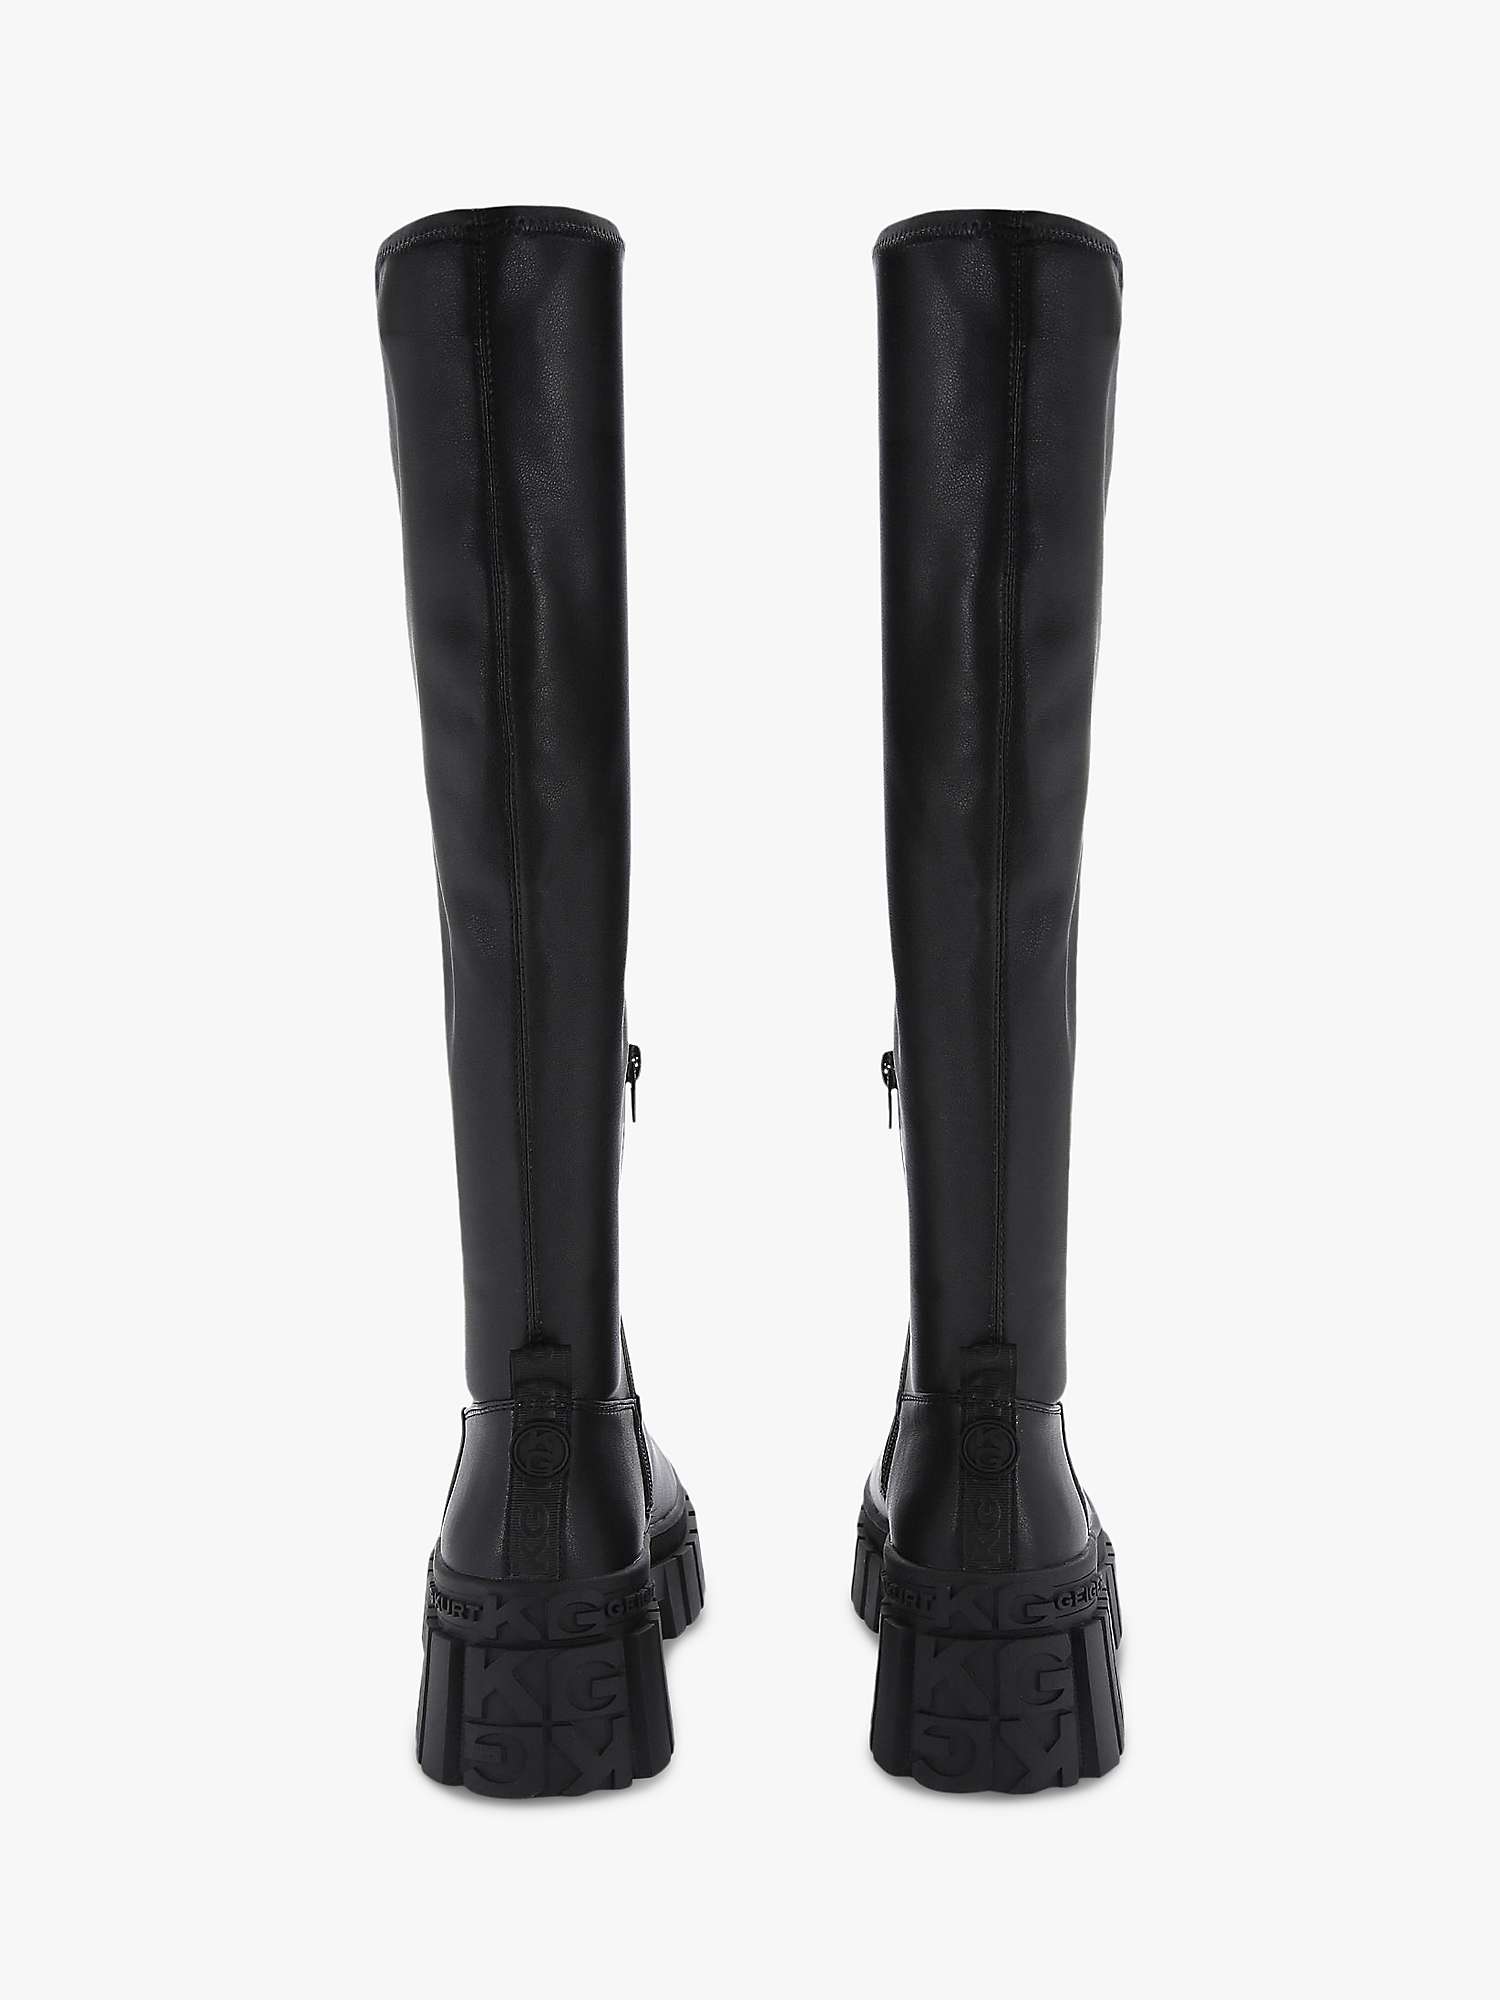 Buy KG Kurt Geiger Tegan Knee High Sock Boots, Black Online at johnlewis.com